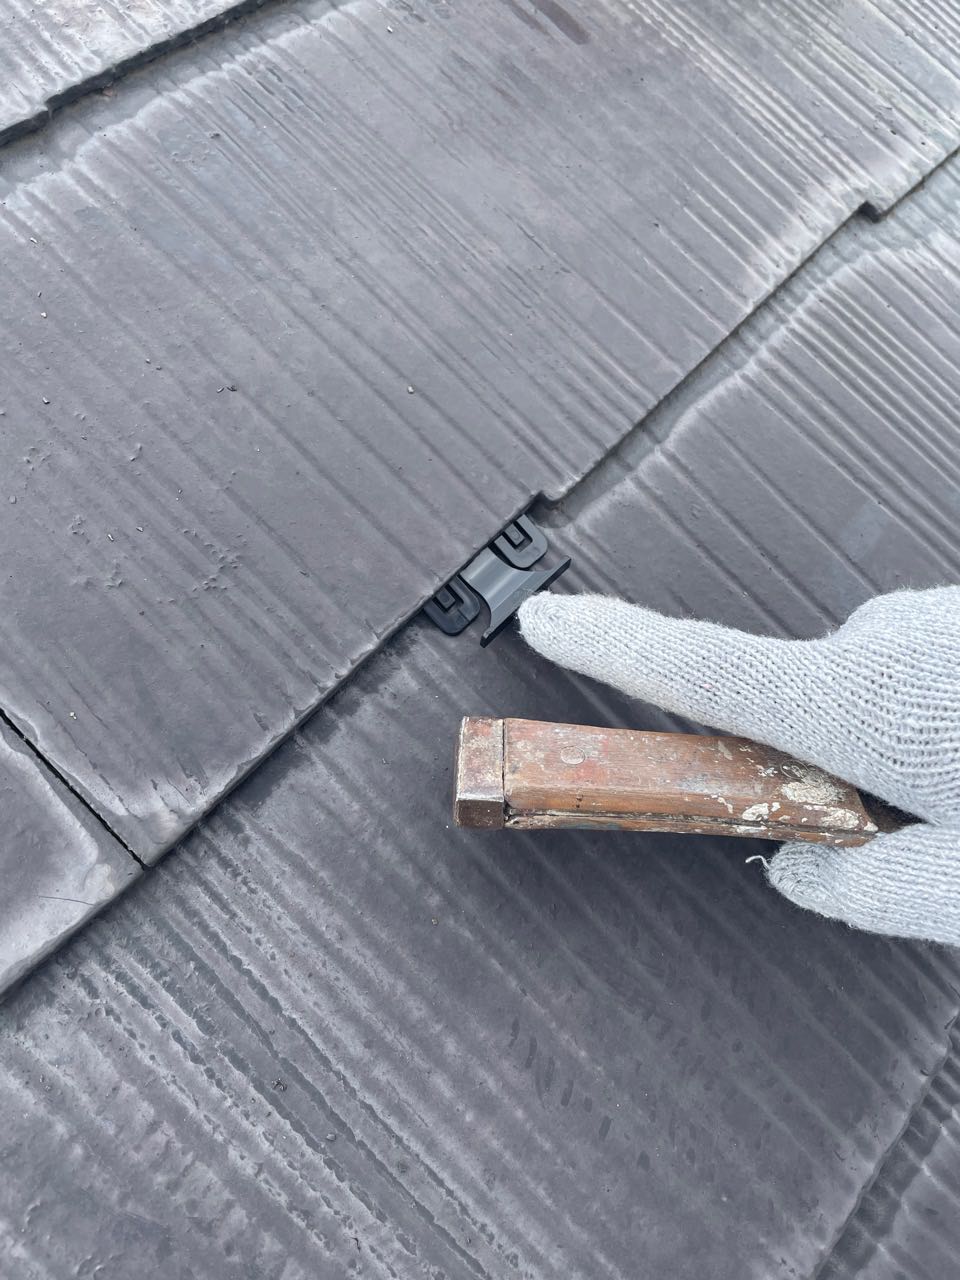 屋根塗装の際に屋根材の隙間を塗料がふさがないようにするための板状のスペーサーです。
「縁切り」と呼ばれる塗装の工程で必要となります。